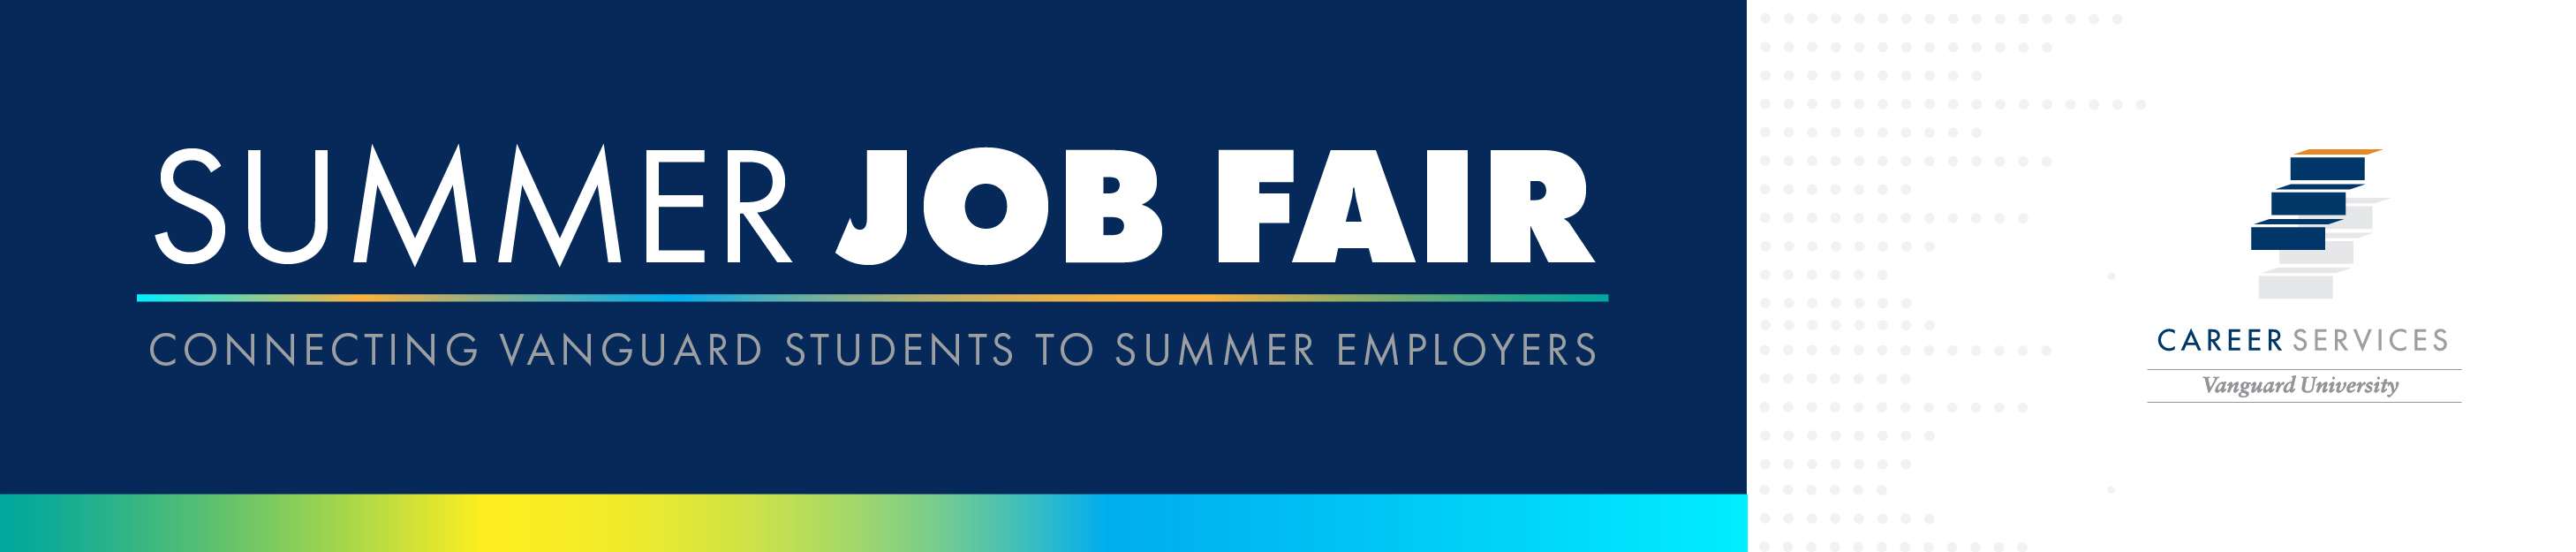 Summer Job Fair Banner